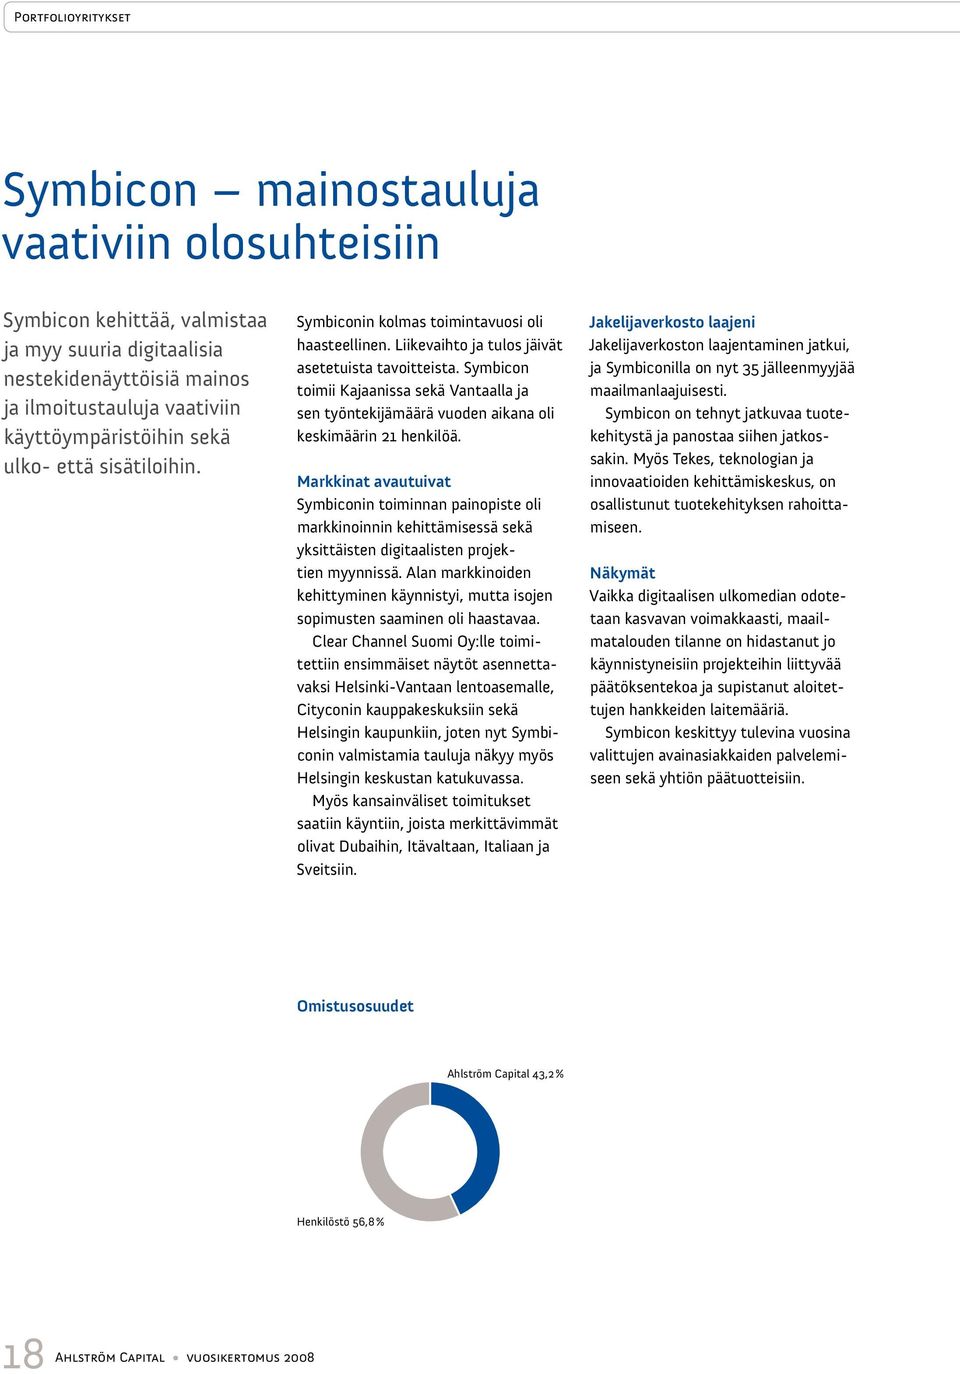 Symbicon toimii Kajaanissa sekä Vantaalla ja sen työntekijämäärä vuoden aikana oli keskimäärin 21 henkilöä.